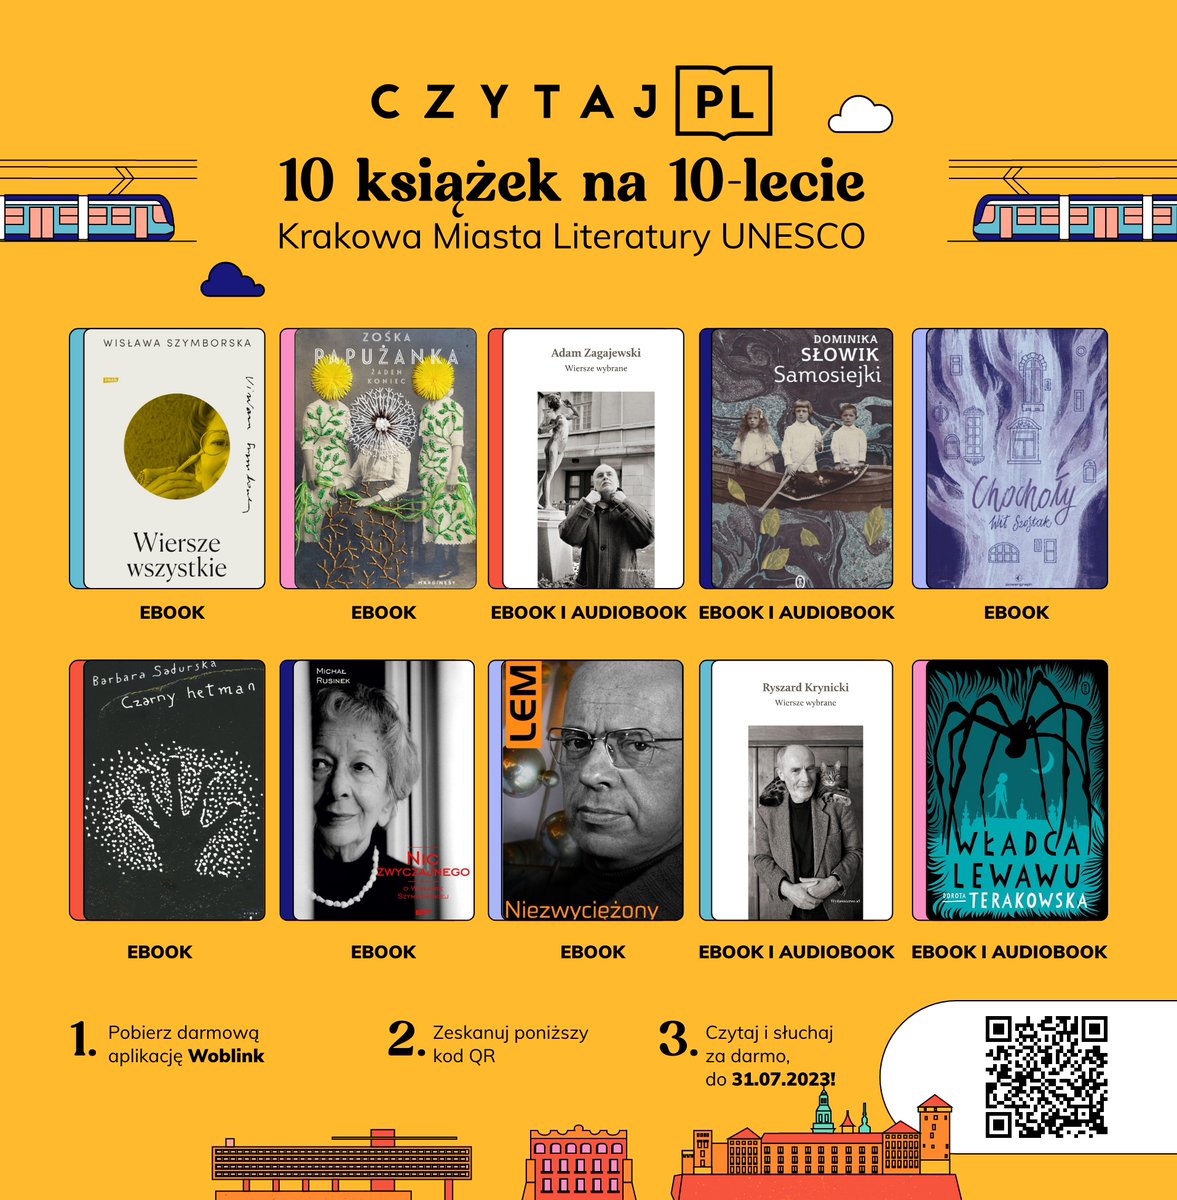 1 lipca ruszyliśmy z krakowską odsłoną Czytaj PL! 💛Przez cały lipiec możecie czytać 10 książek na 10-lecia Krakowa Miasta Literatury UNESCO zupełnie za darmo! Szczegóły akcji znajdziecie tutaj: woblink.com/s/akcja-czytaj… #czytajpl #czytajkraków